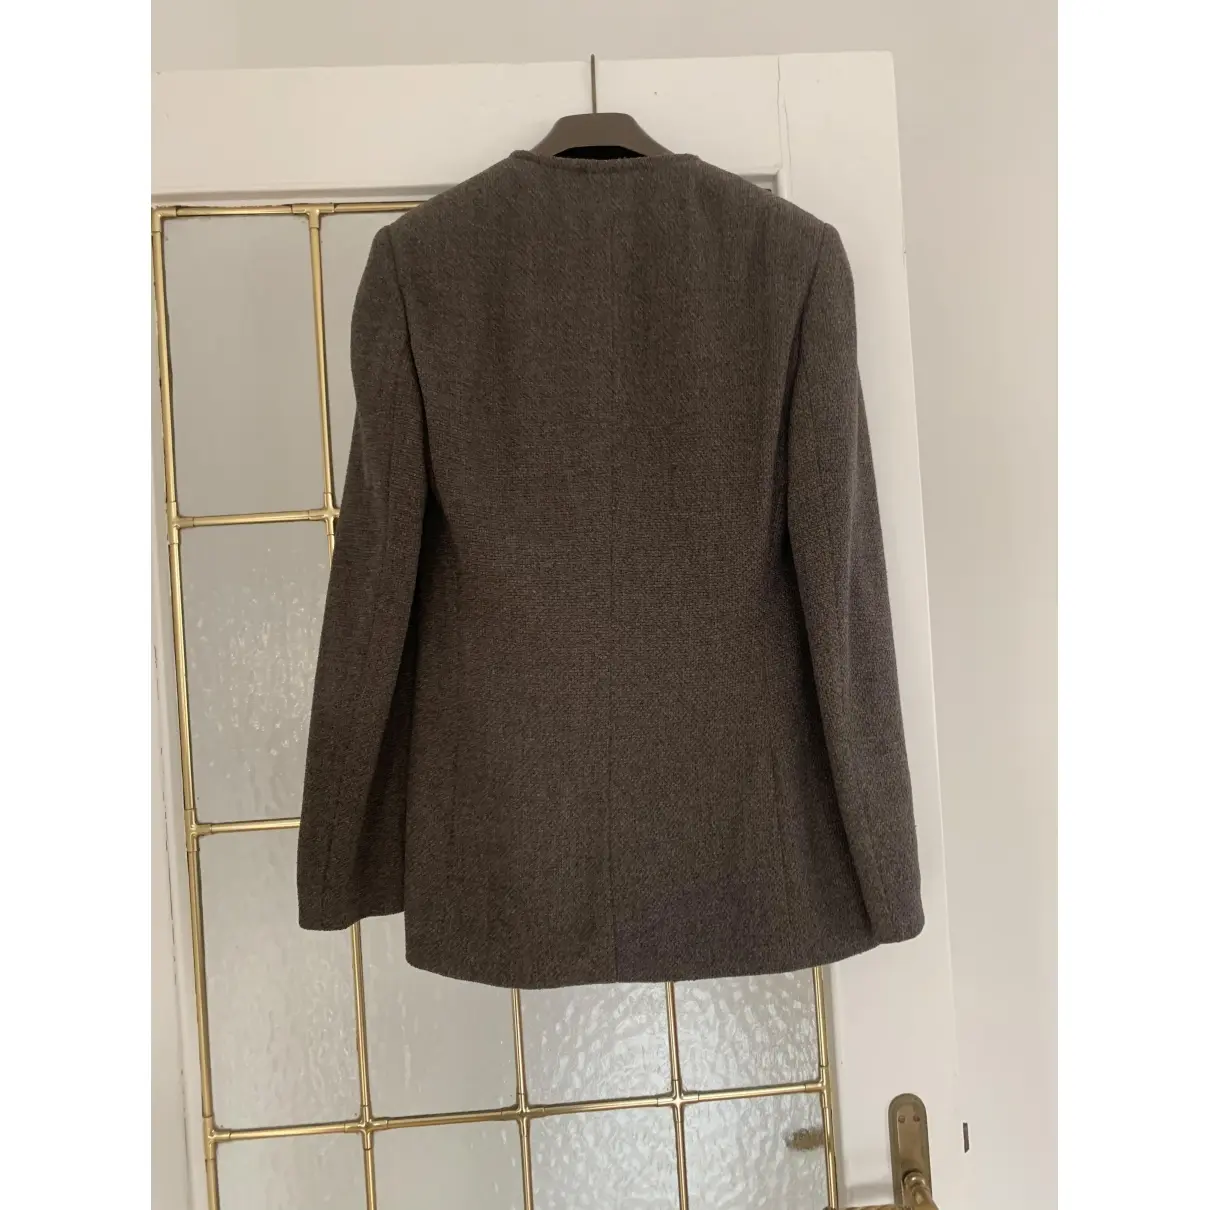 Giorgio Armani Wool jacket for sale - Vintage